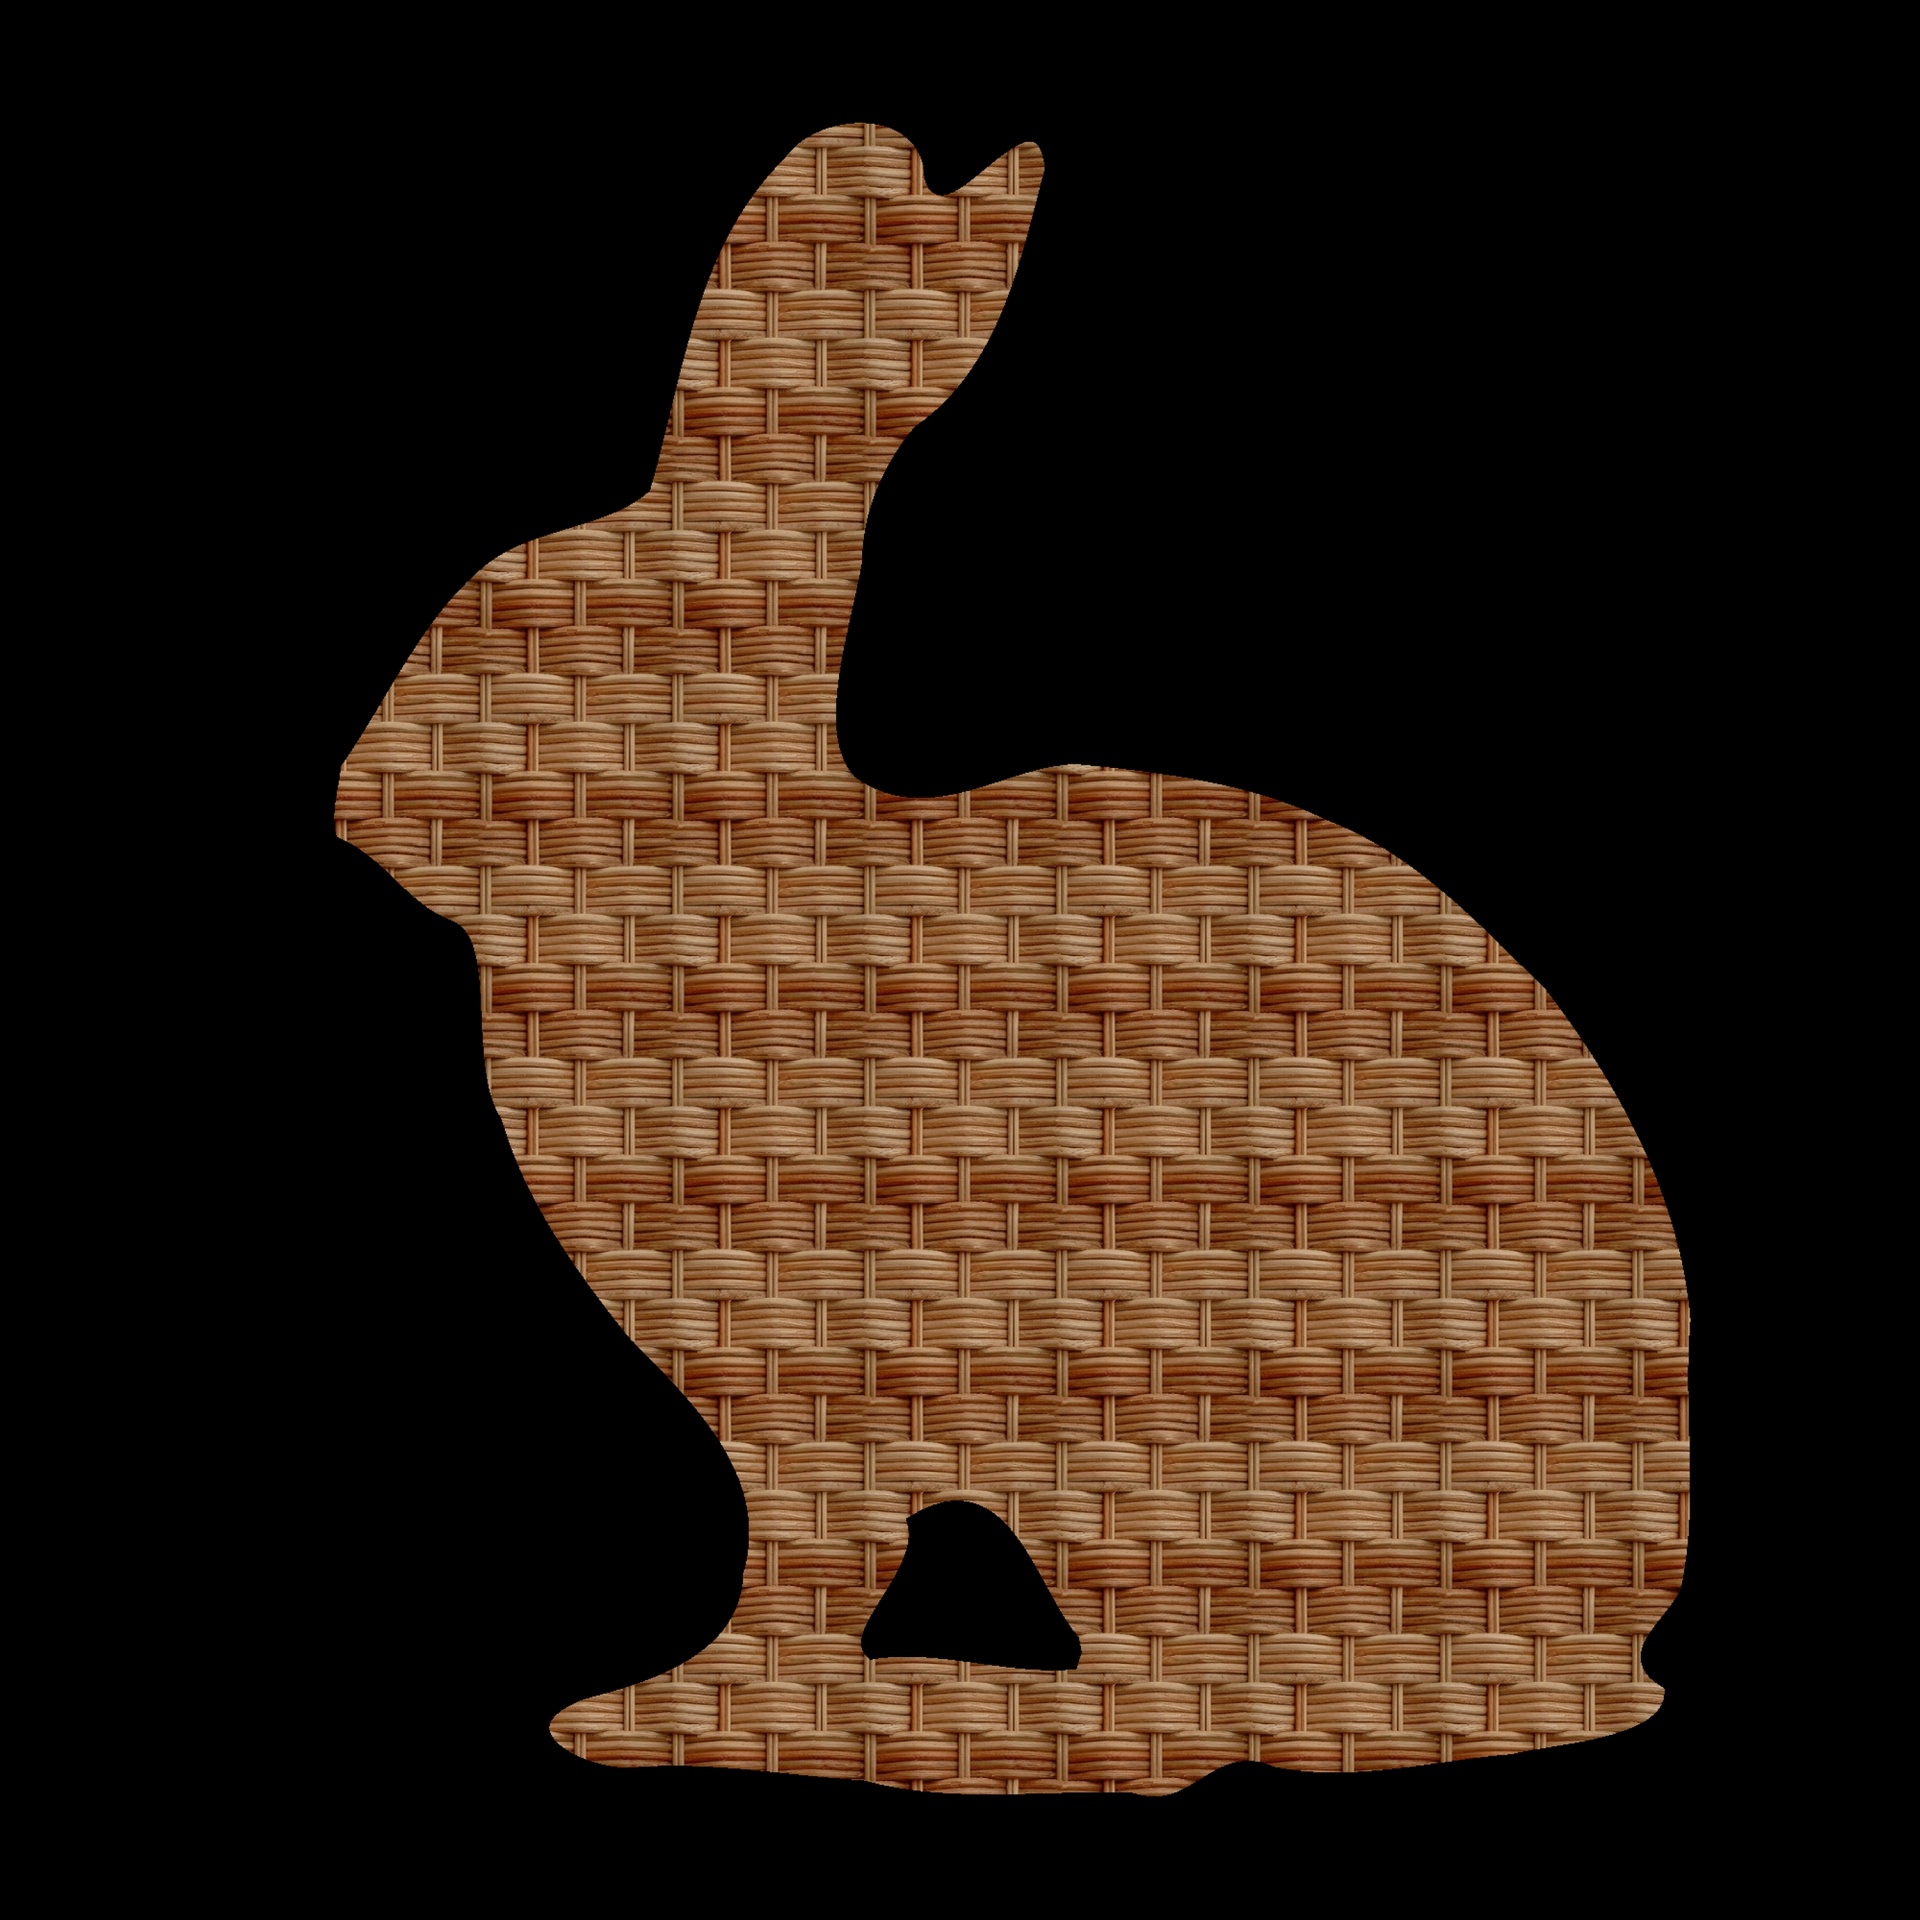 Wooden Bunny